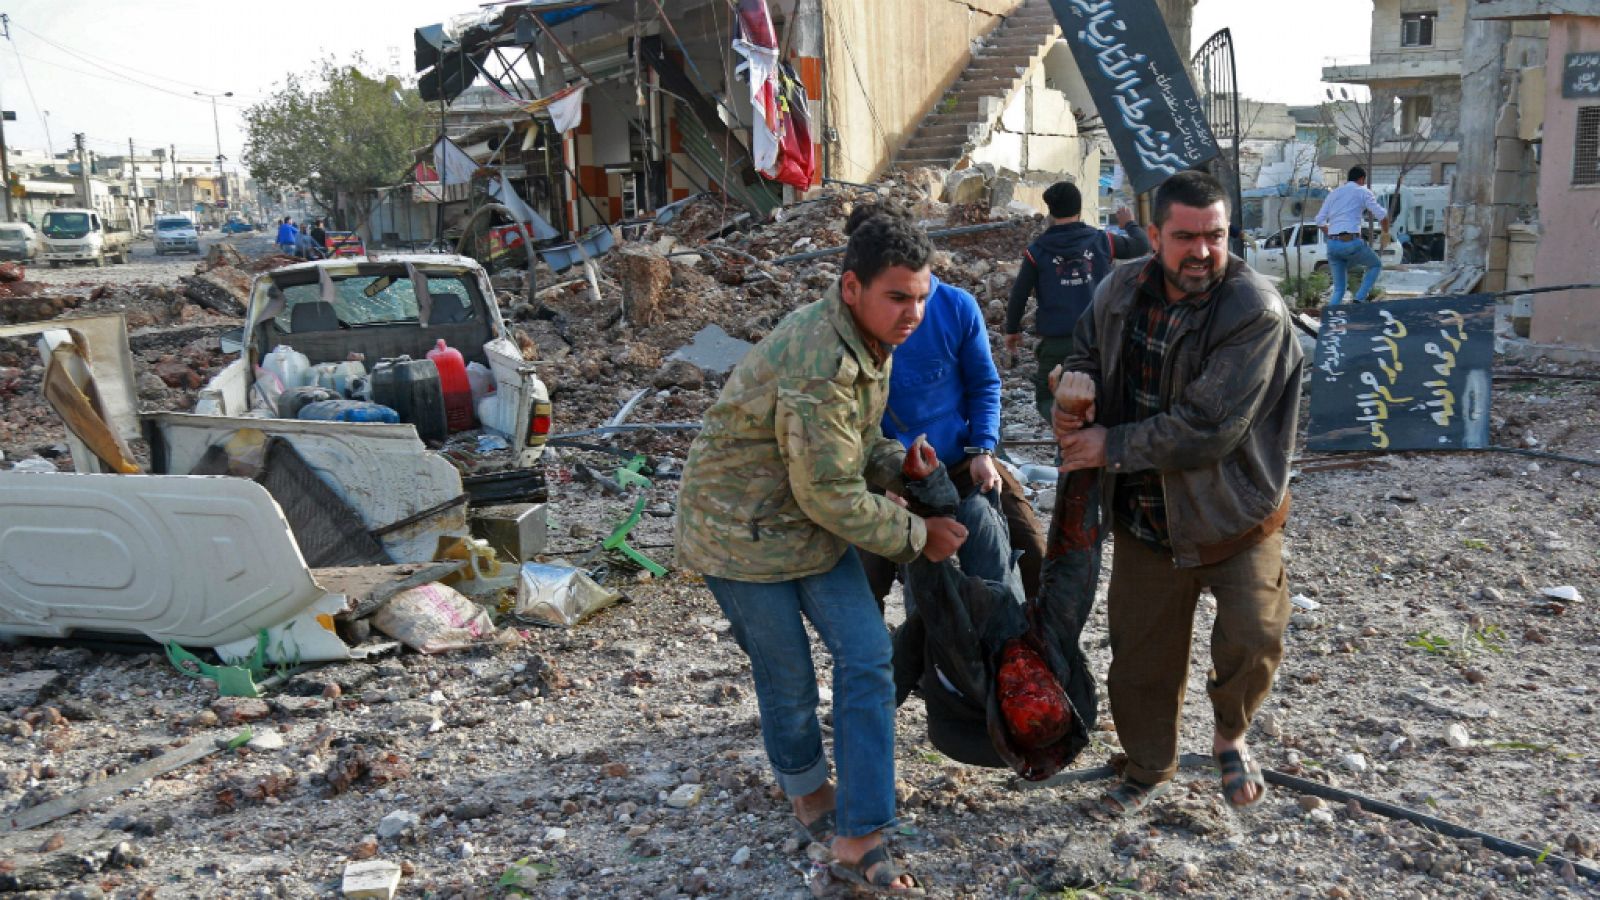 Boletines RNE - Siria: mortíferos bombardeos contra un mercado en Alepo - Escuchar ahora